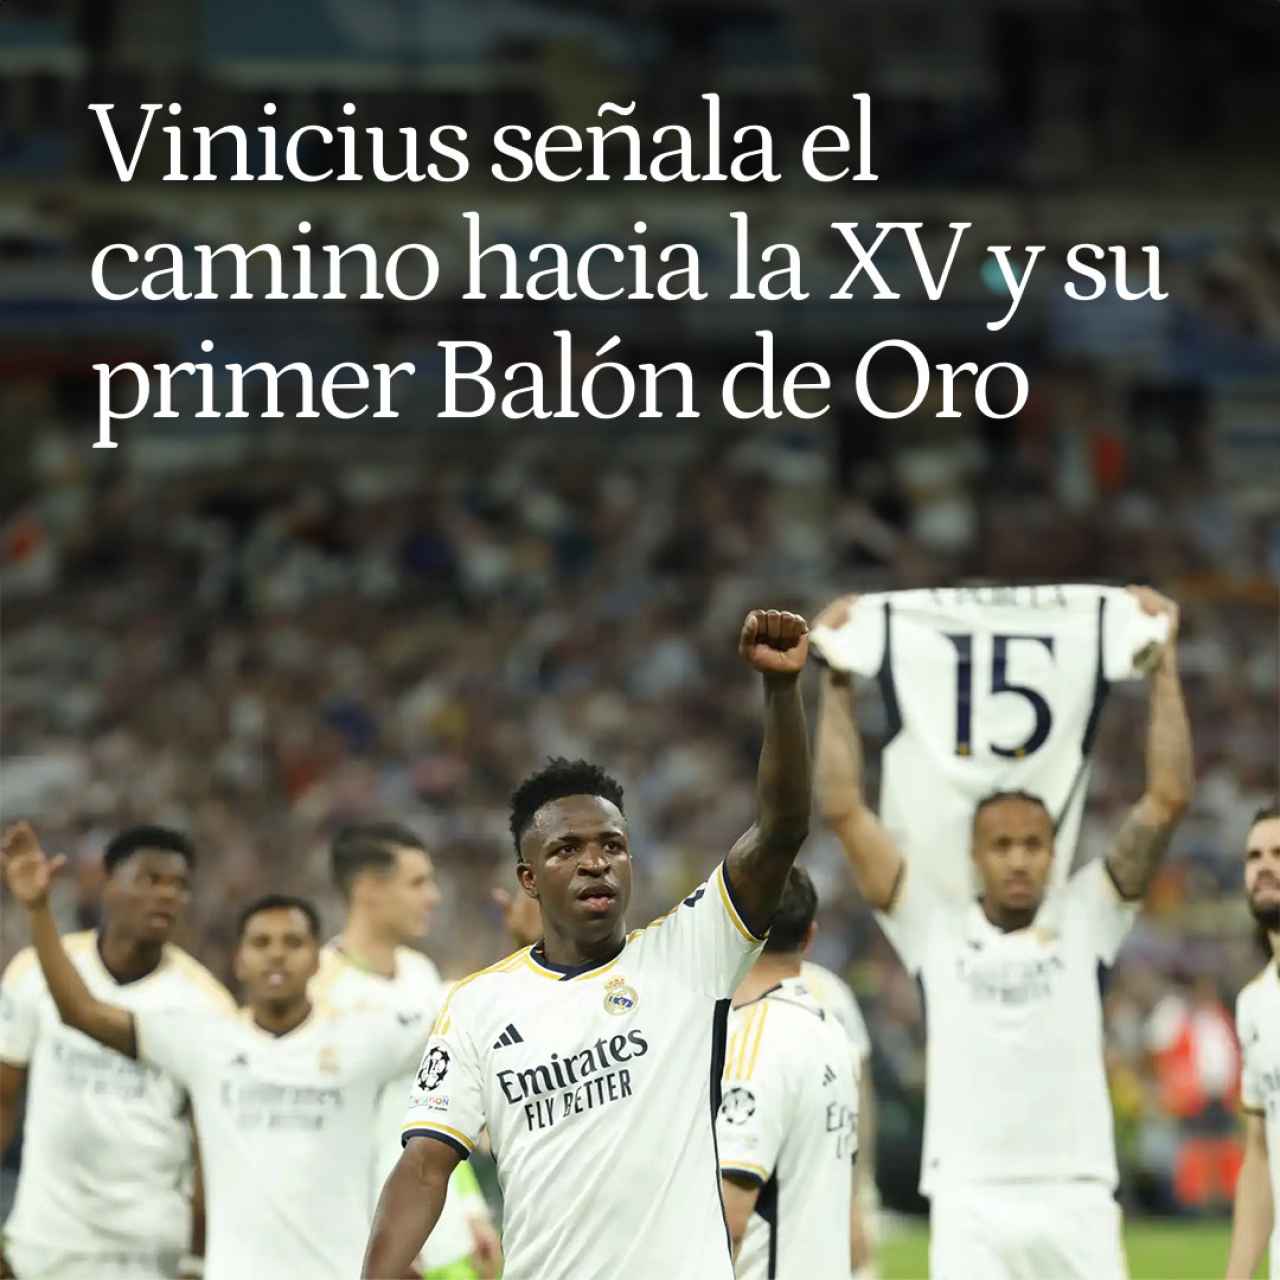 Vinicius señala el camino hacia La Decimoquinta y su primer Balón de Oro: la estrella total de Ancelotti